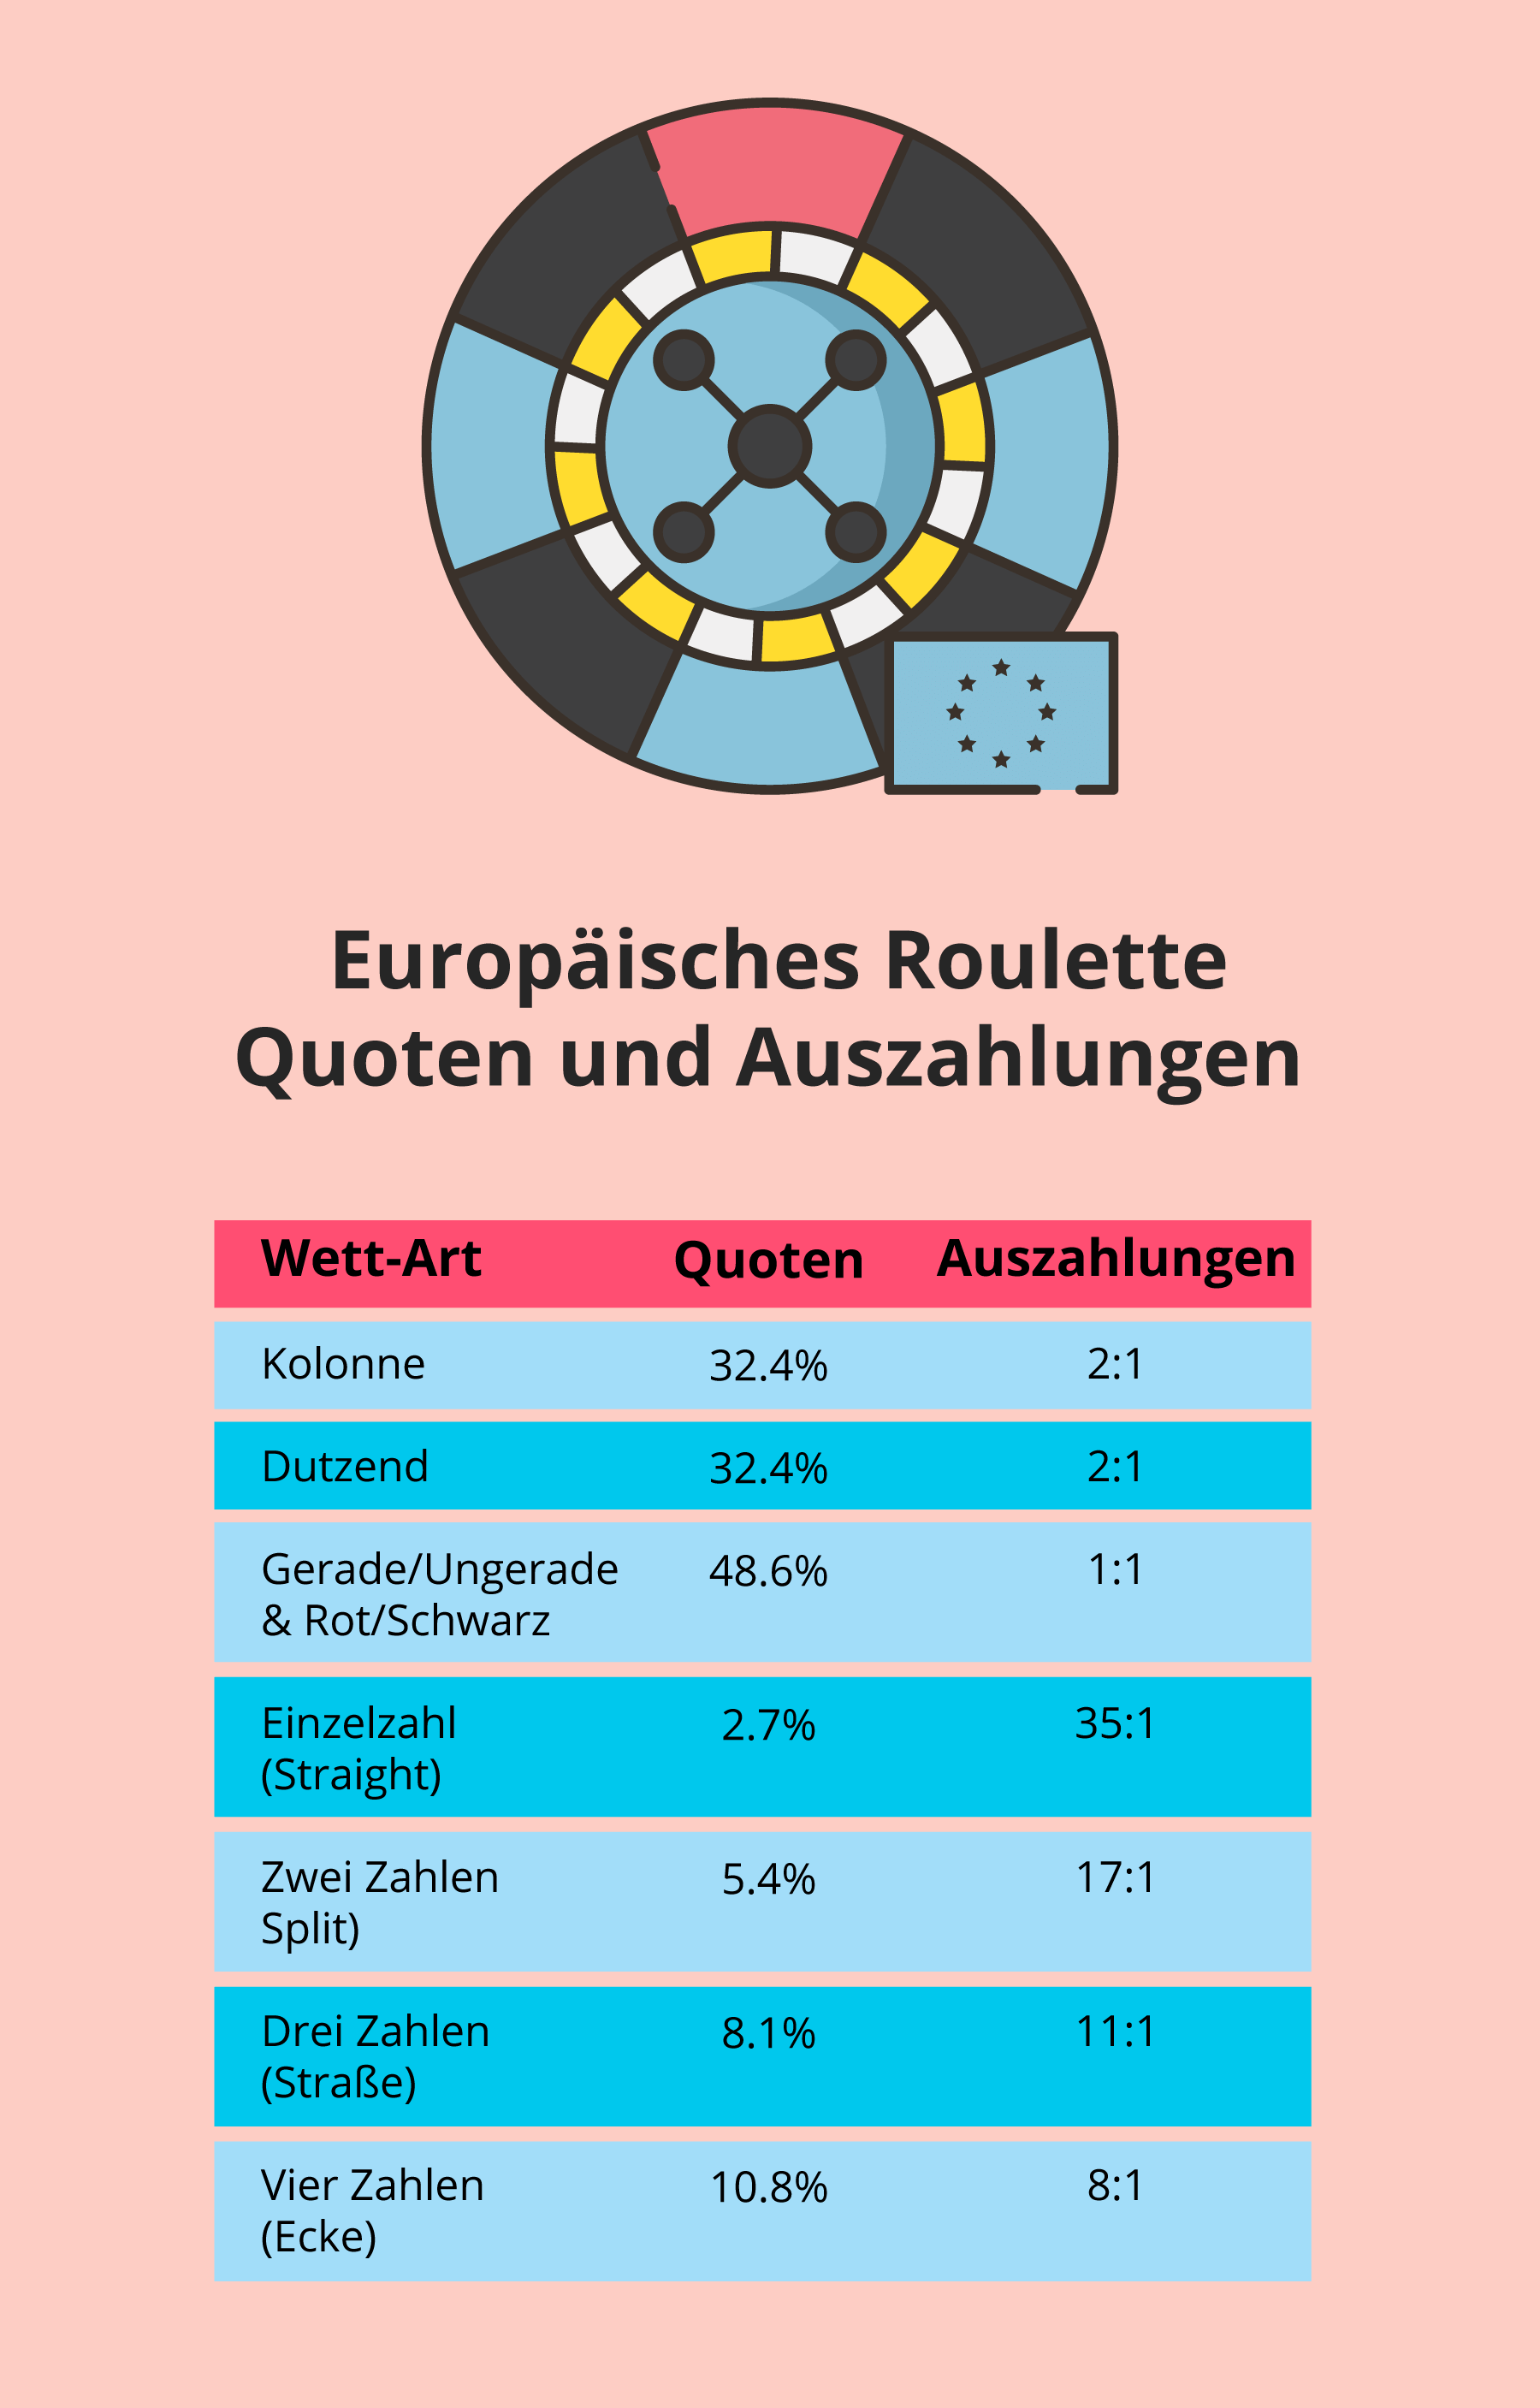 Quoten und Auszahlungen beim europ. Roulette